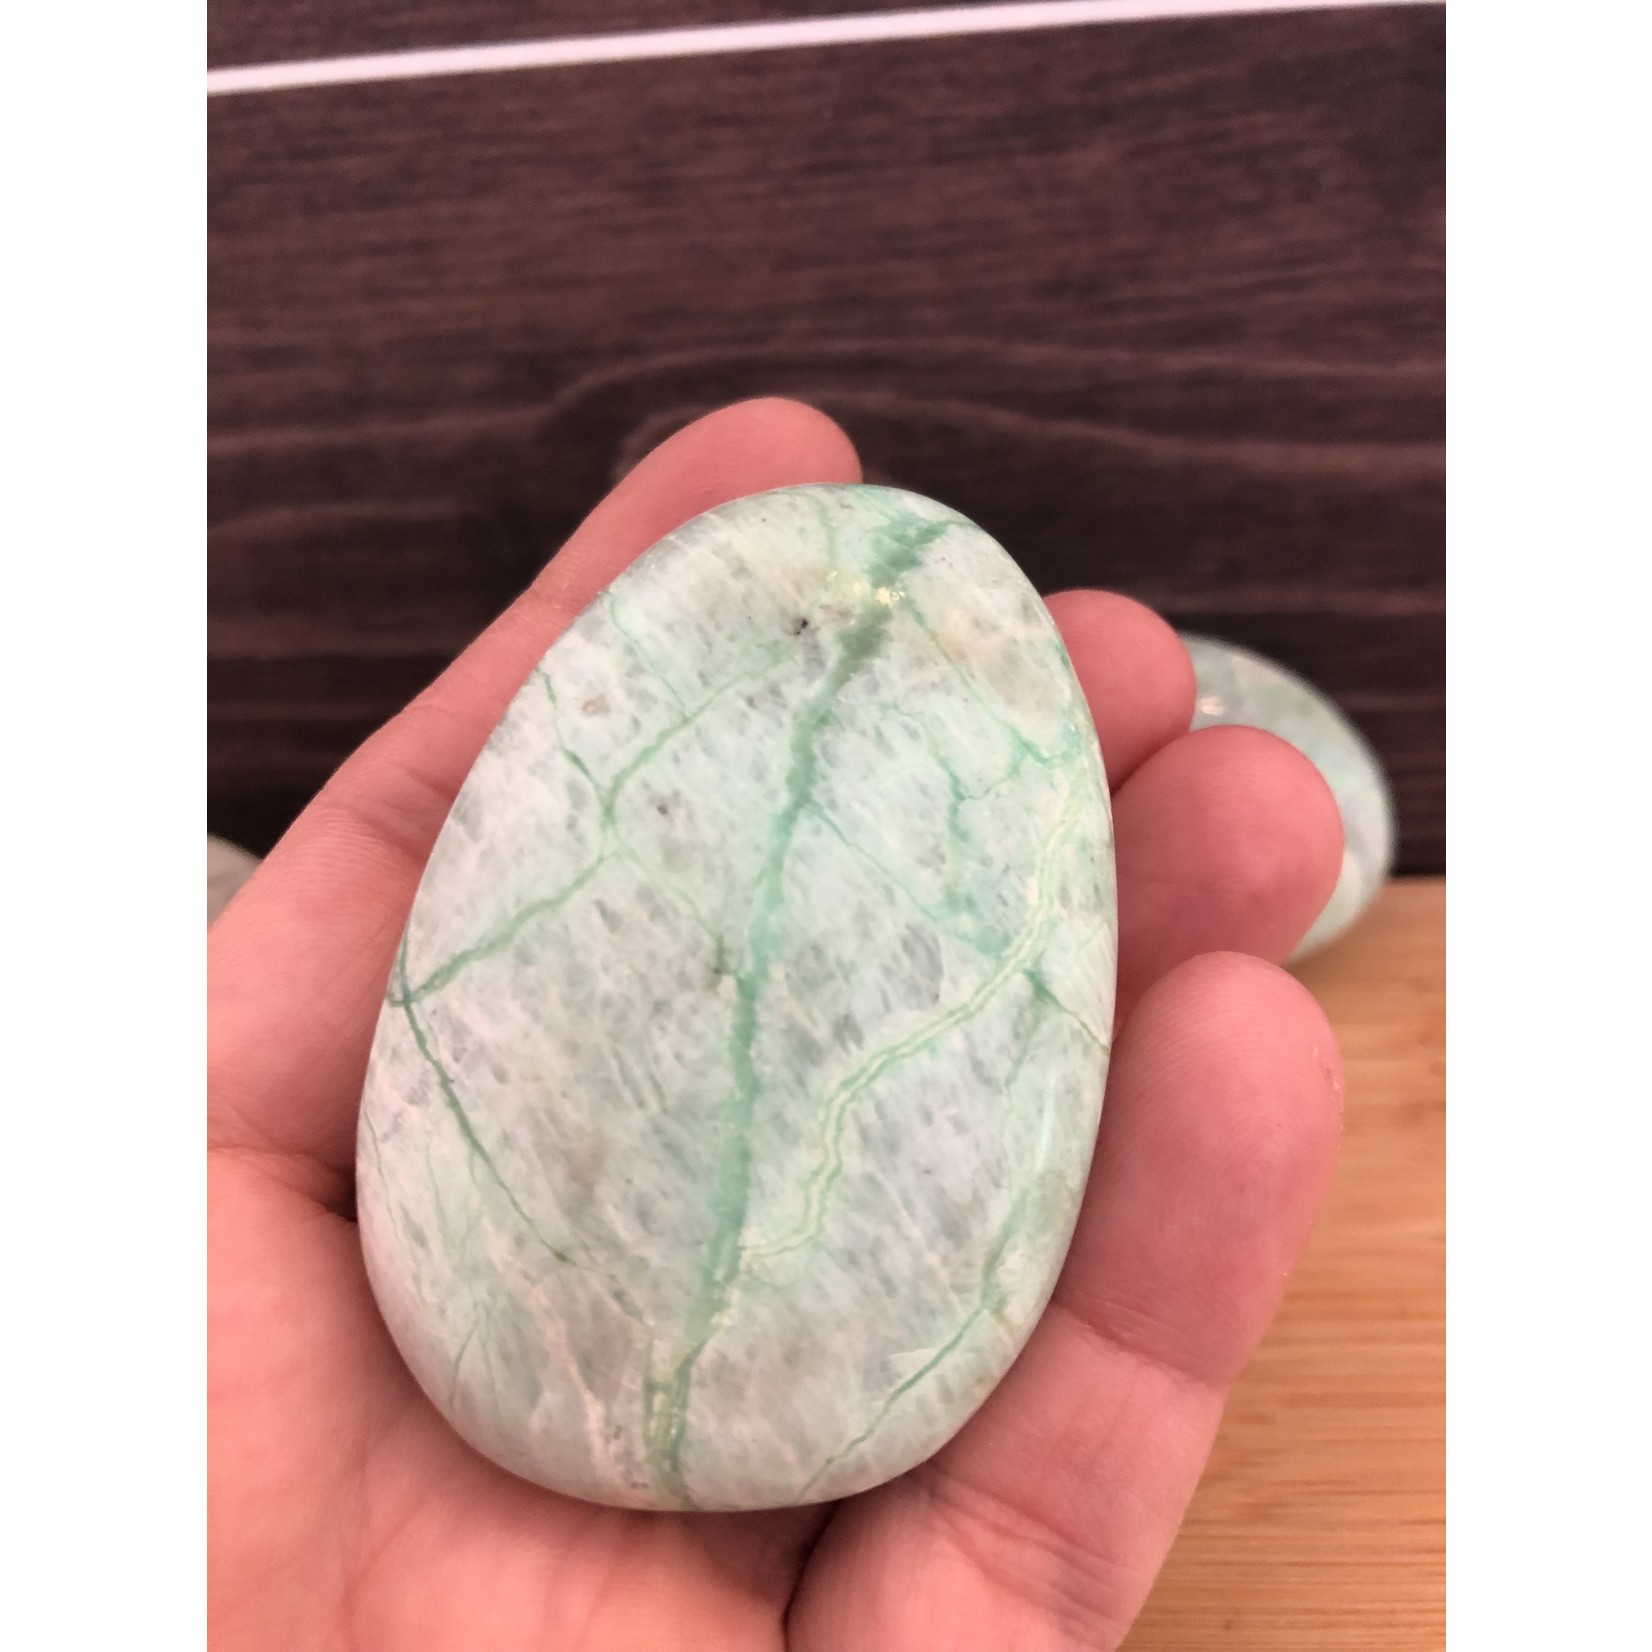 pierre garniérite paume de main polie, pierre de lune verte, pierre anti soucis de lune verte, augmente notre fréquence vibratoire